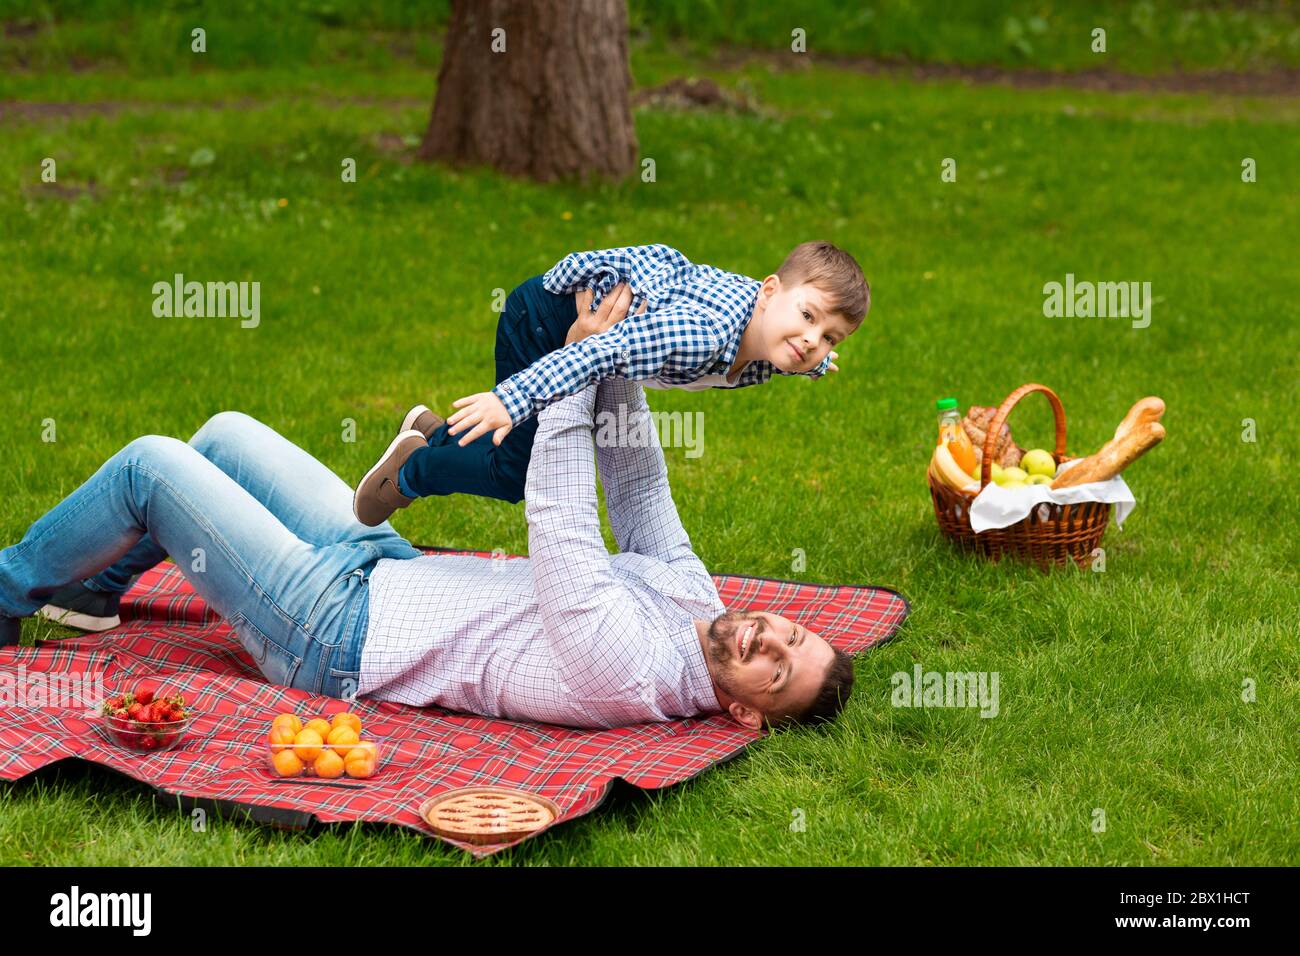 Papa joyeux jouant avec son enfant pendant le pique-nique sur la prairie verte, espace de copie Banque D'Images